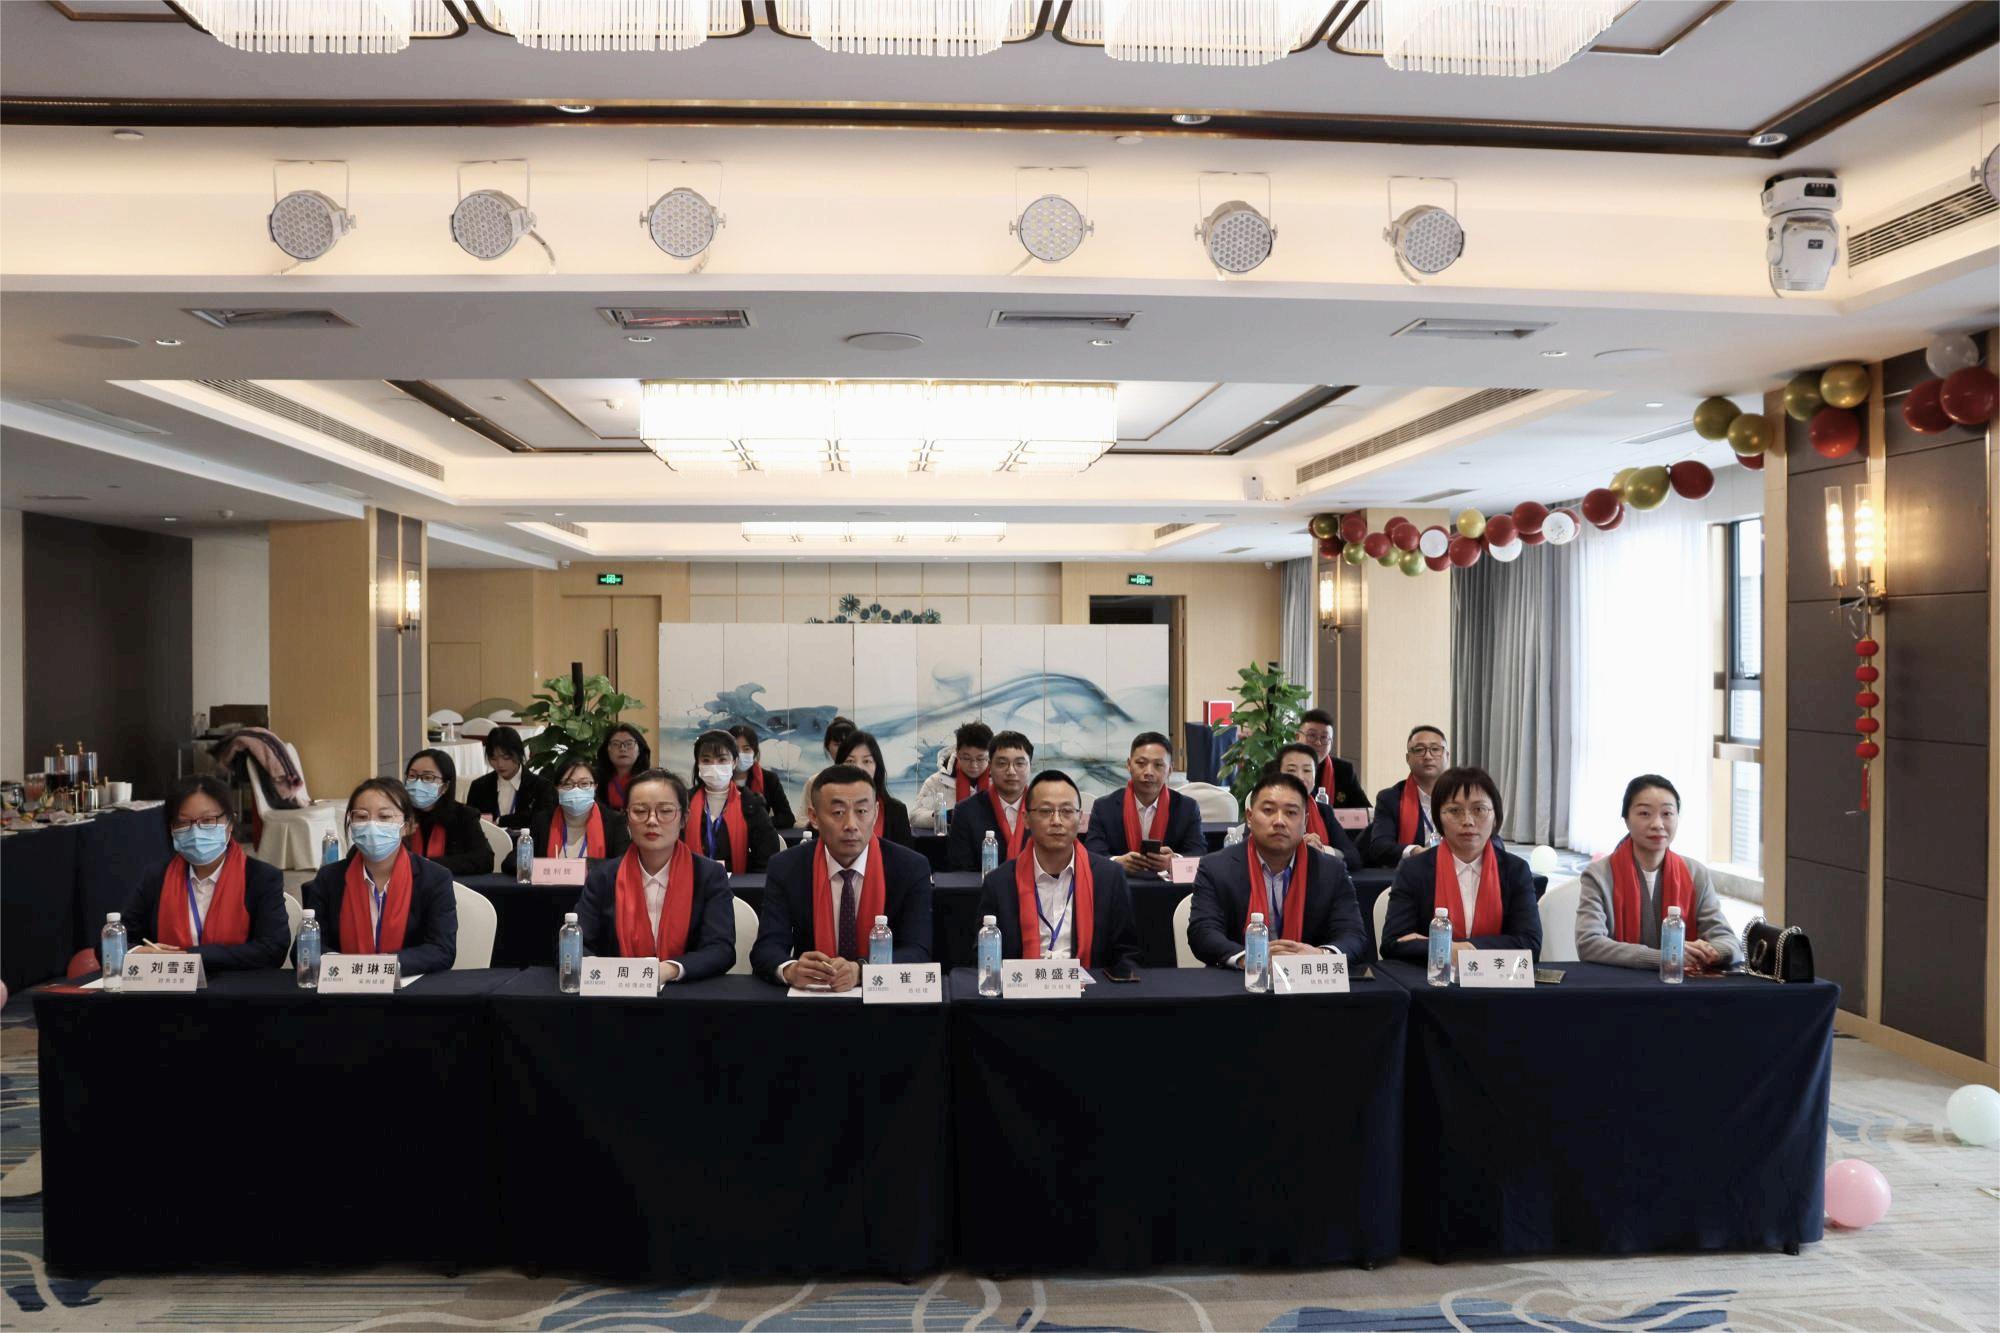 سیچوان شینگشی ہینگ یانگ نے 16 جنوری 2023 کو ایک عظیم الشان سالانہ اجلاس منعقد کیا۔